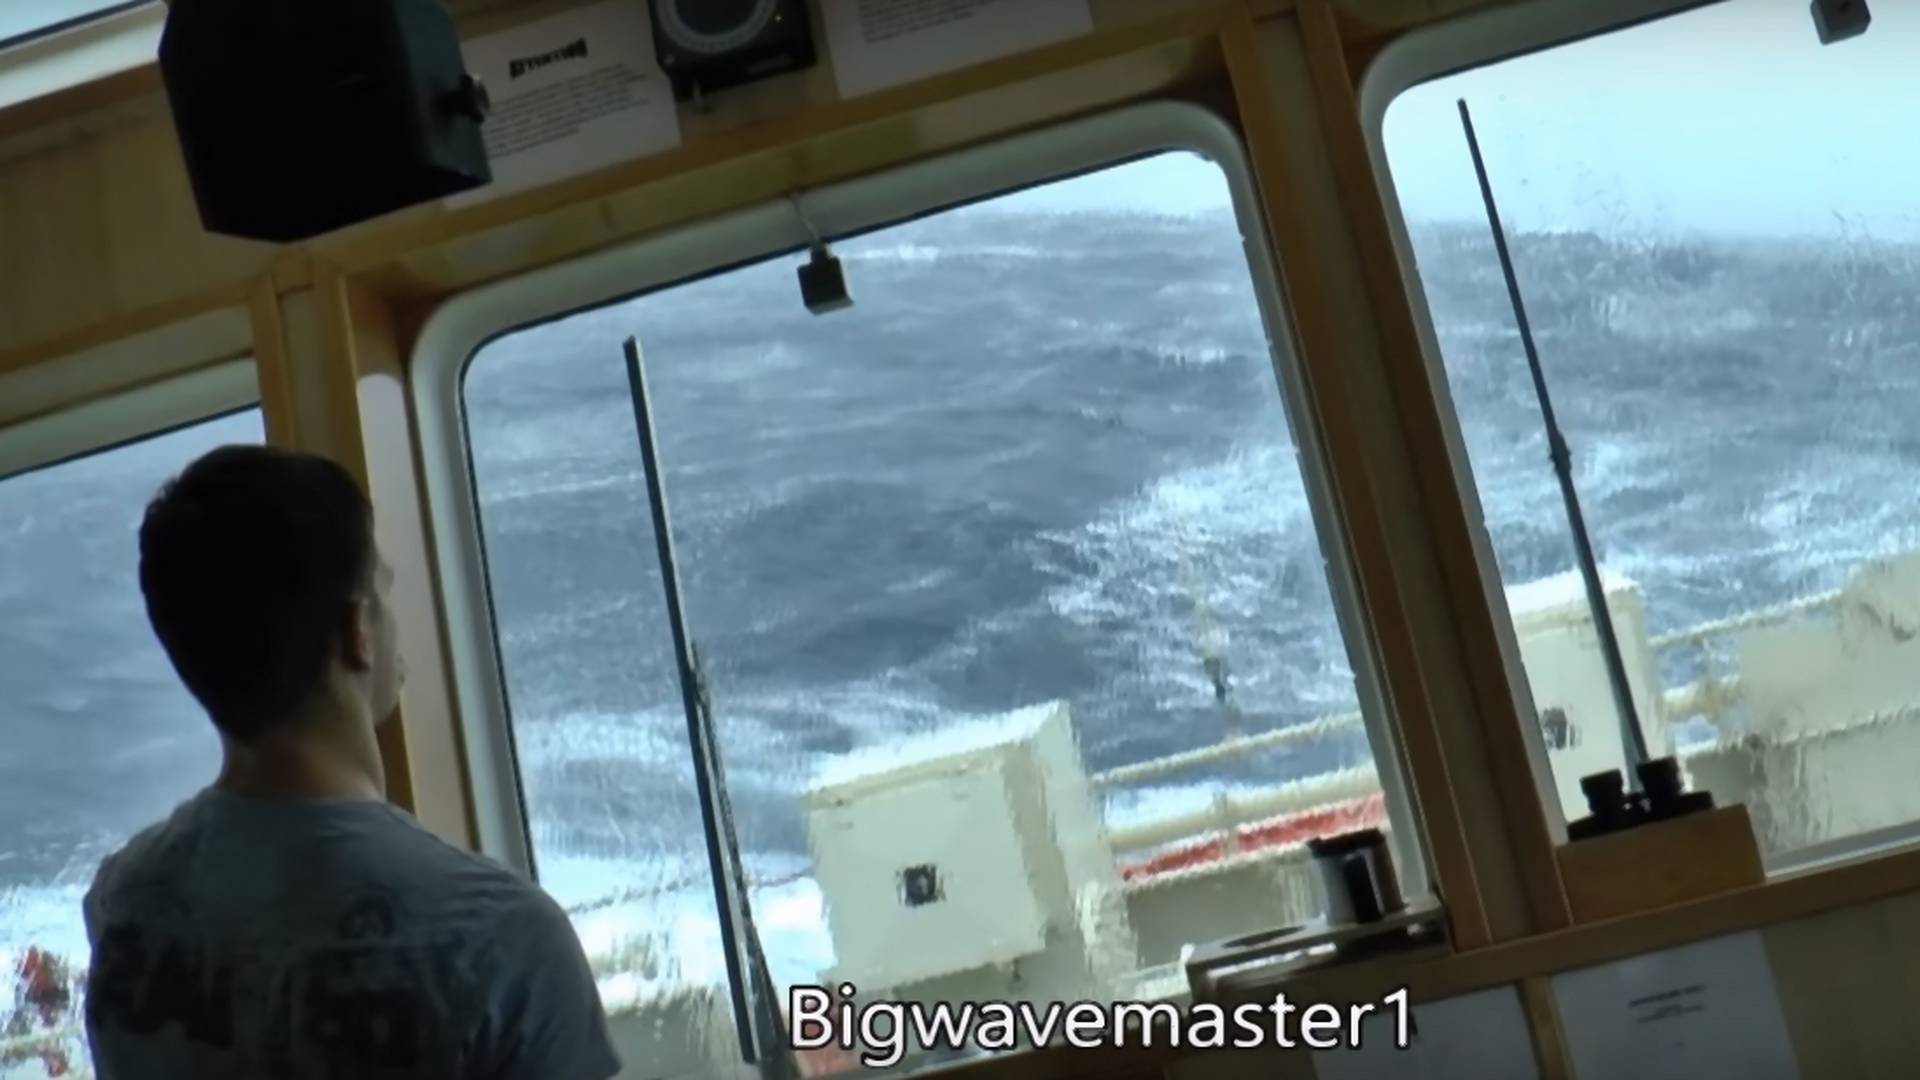 Jak wygląda sztorm z perspektywy kapitana statku? Od samego patrzenia wariuje błędnik [WIDEO]